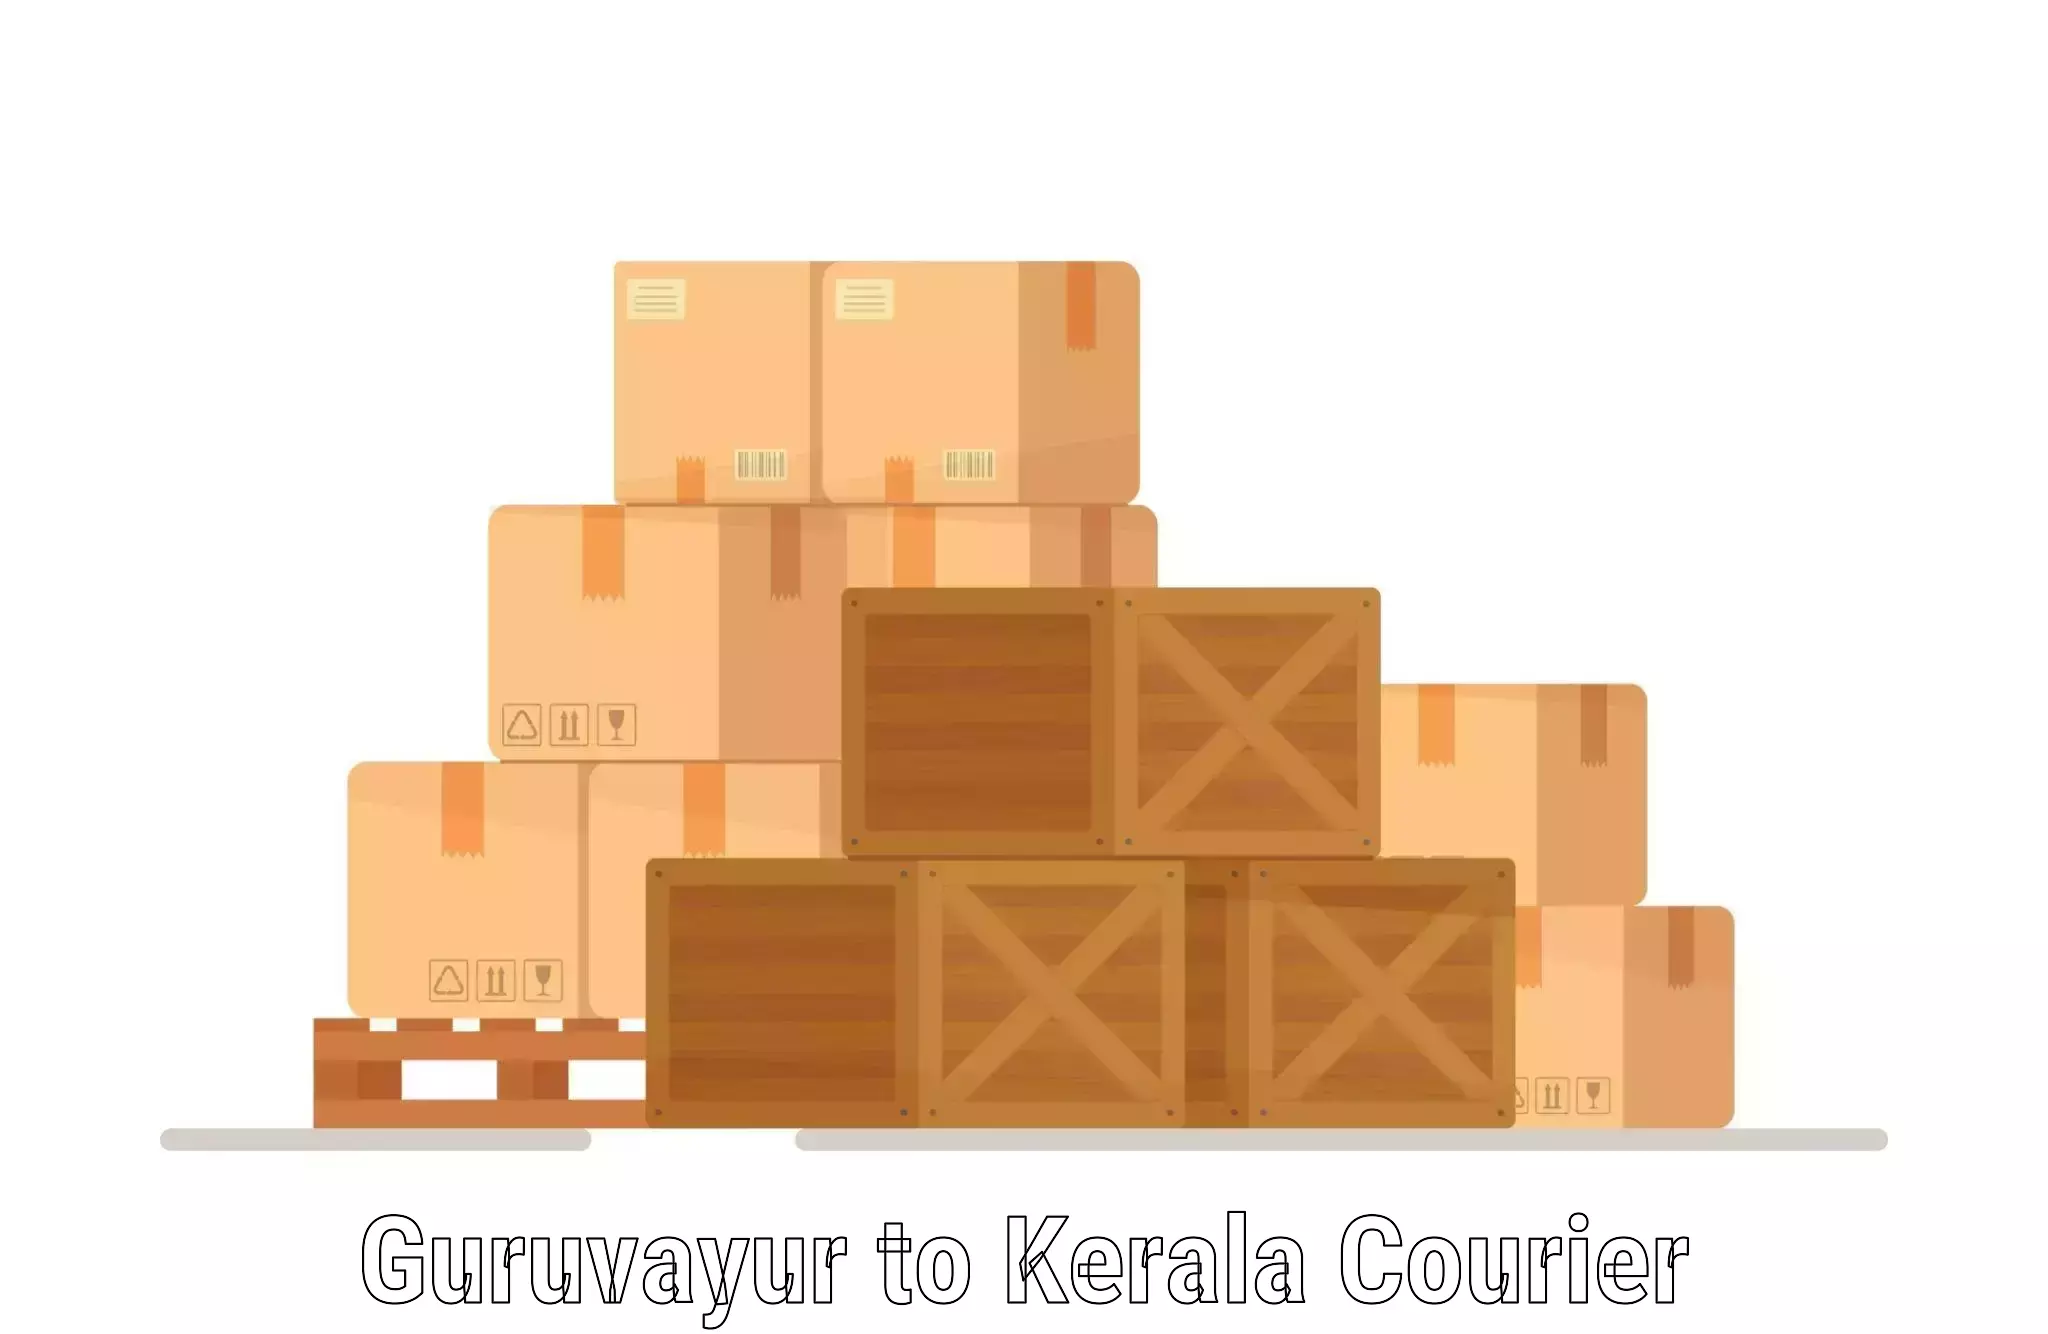 On-demand courier in Guruvayur to IIIT Kottayam